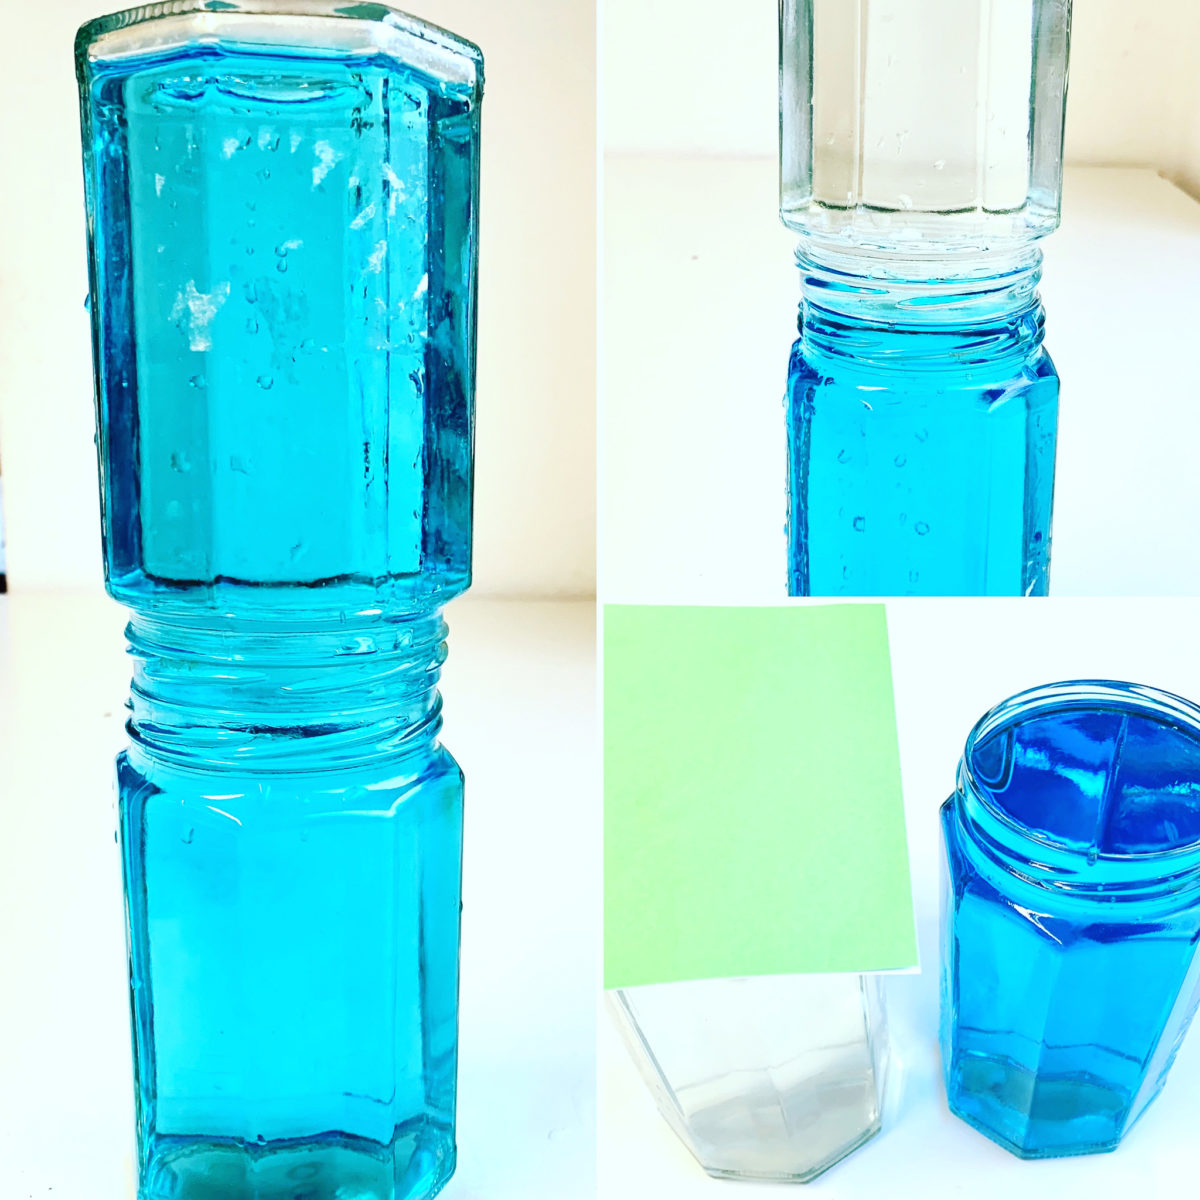 Zauberexperiment mit Wasser: heißes und kaltes Wasser je in einem Glas werden übereinander gestellt. Einmal vermischen sich die Wässer aus den beiden Gläsern, einmal nicht.